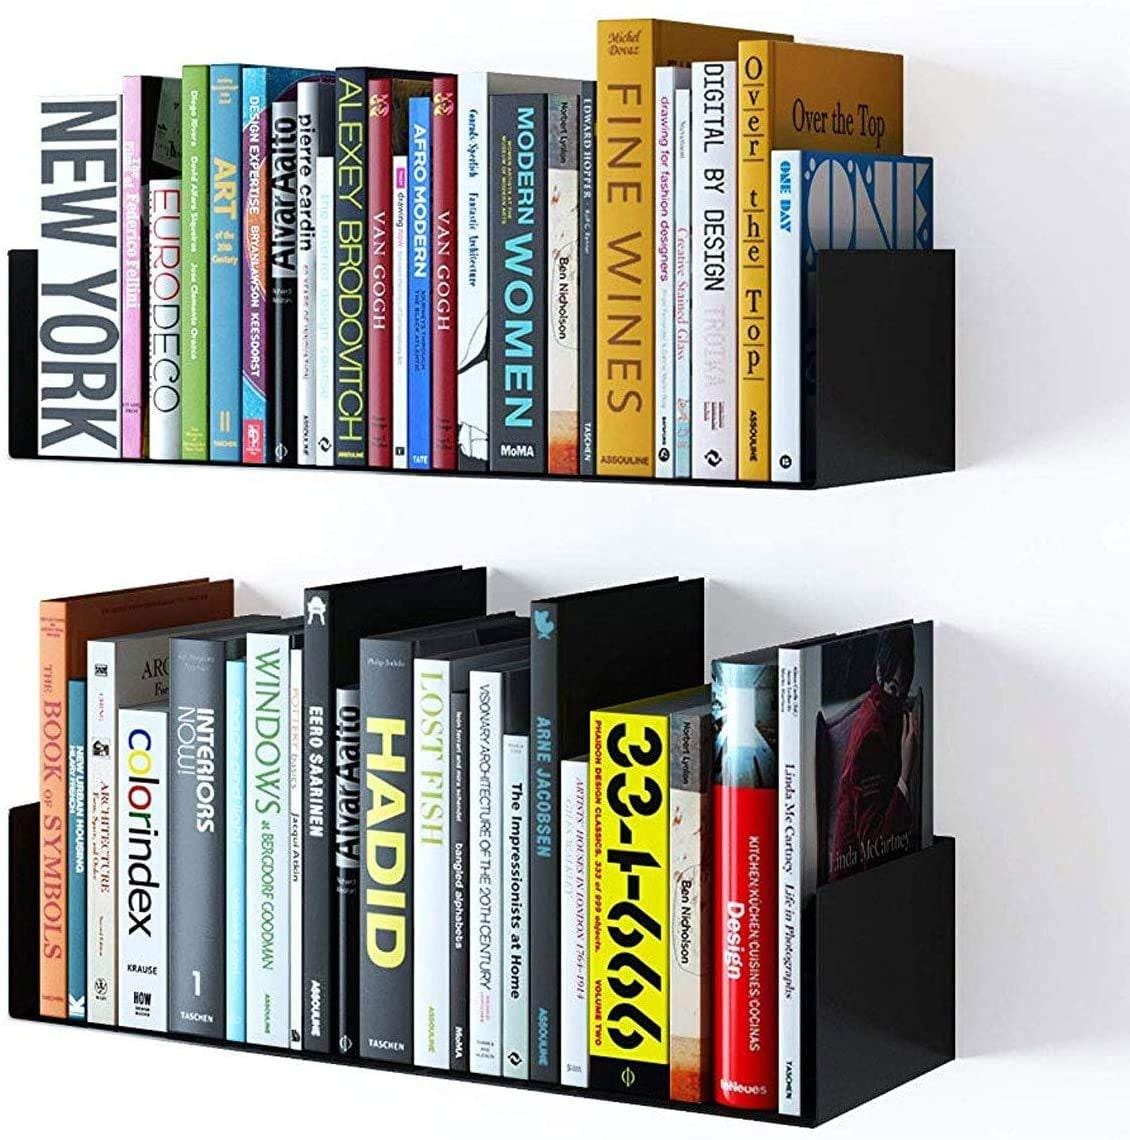 Bookshelves - Buy wooden bookshelves online in India, floating bookshelf